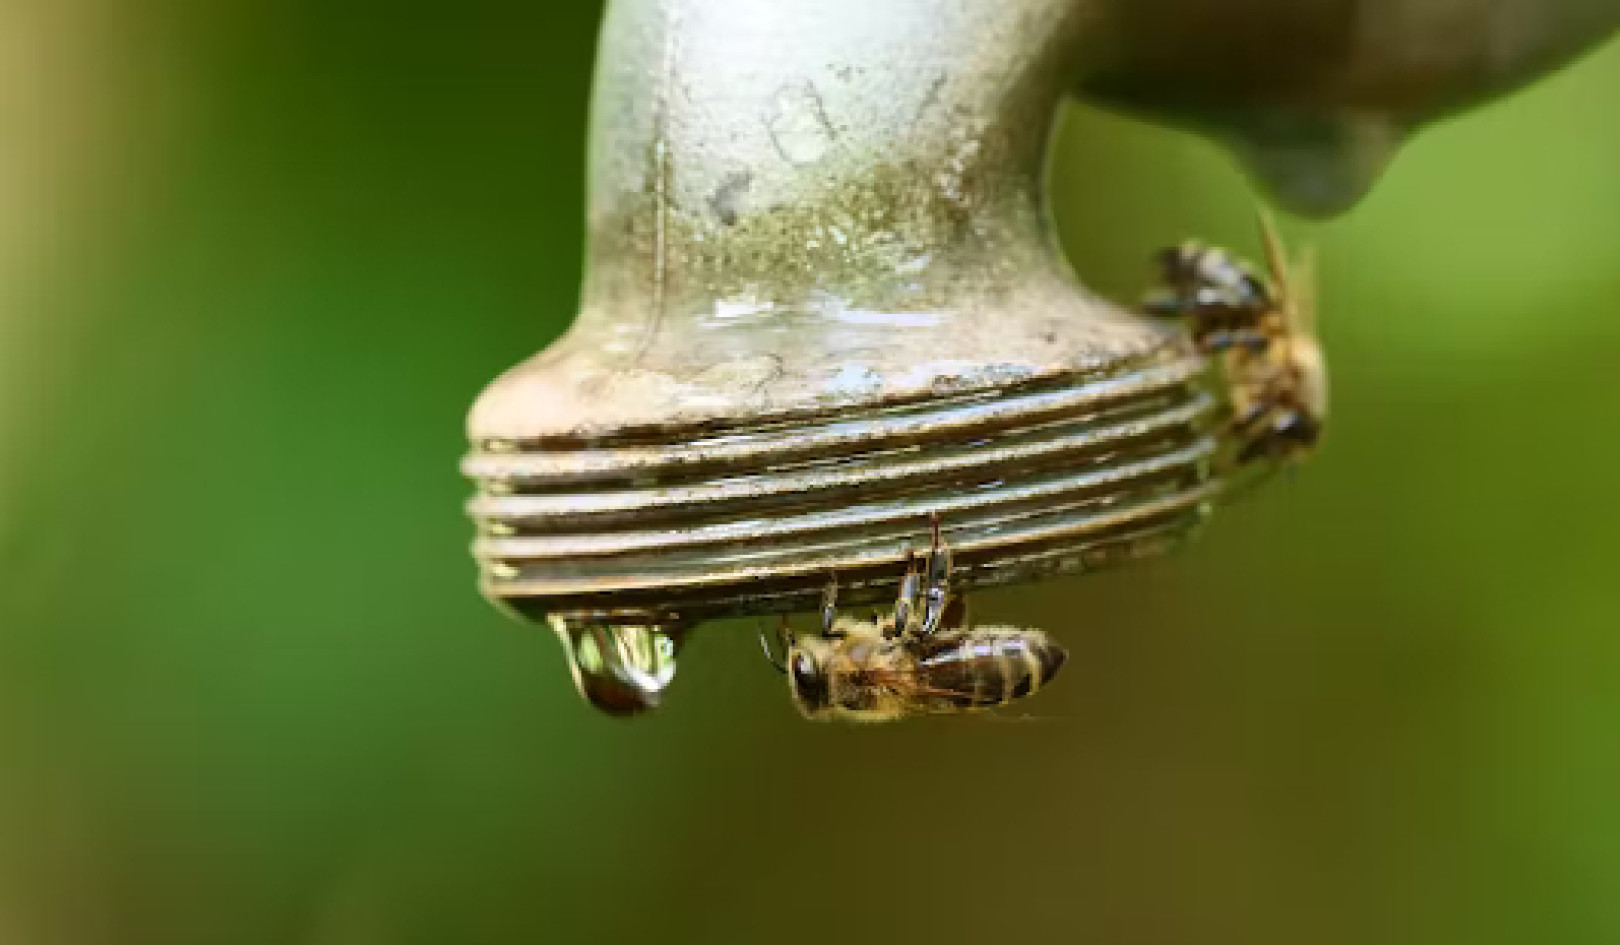 يواجه النحل العديد من التحديات وتغير المناخ يؤدي إلى زيادة الضغط